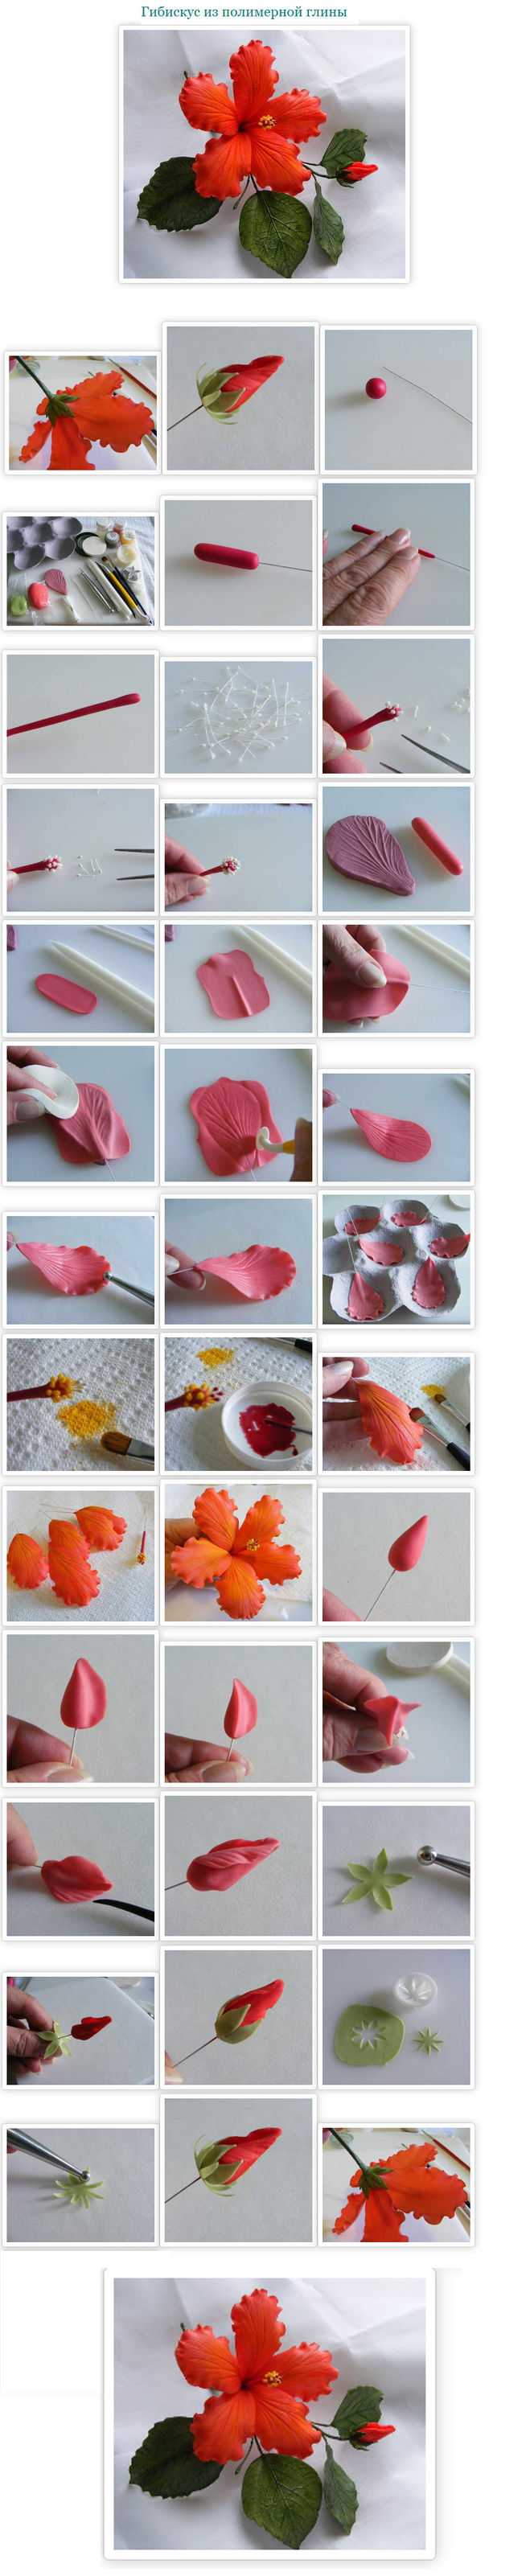 Цветы из полимерной глины — инструкция для начинающих, советы и фото примеры работ